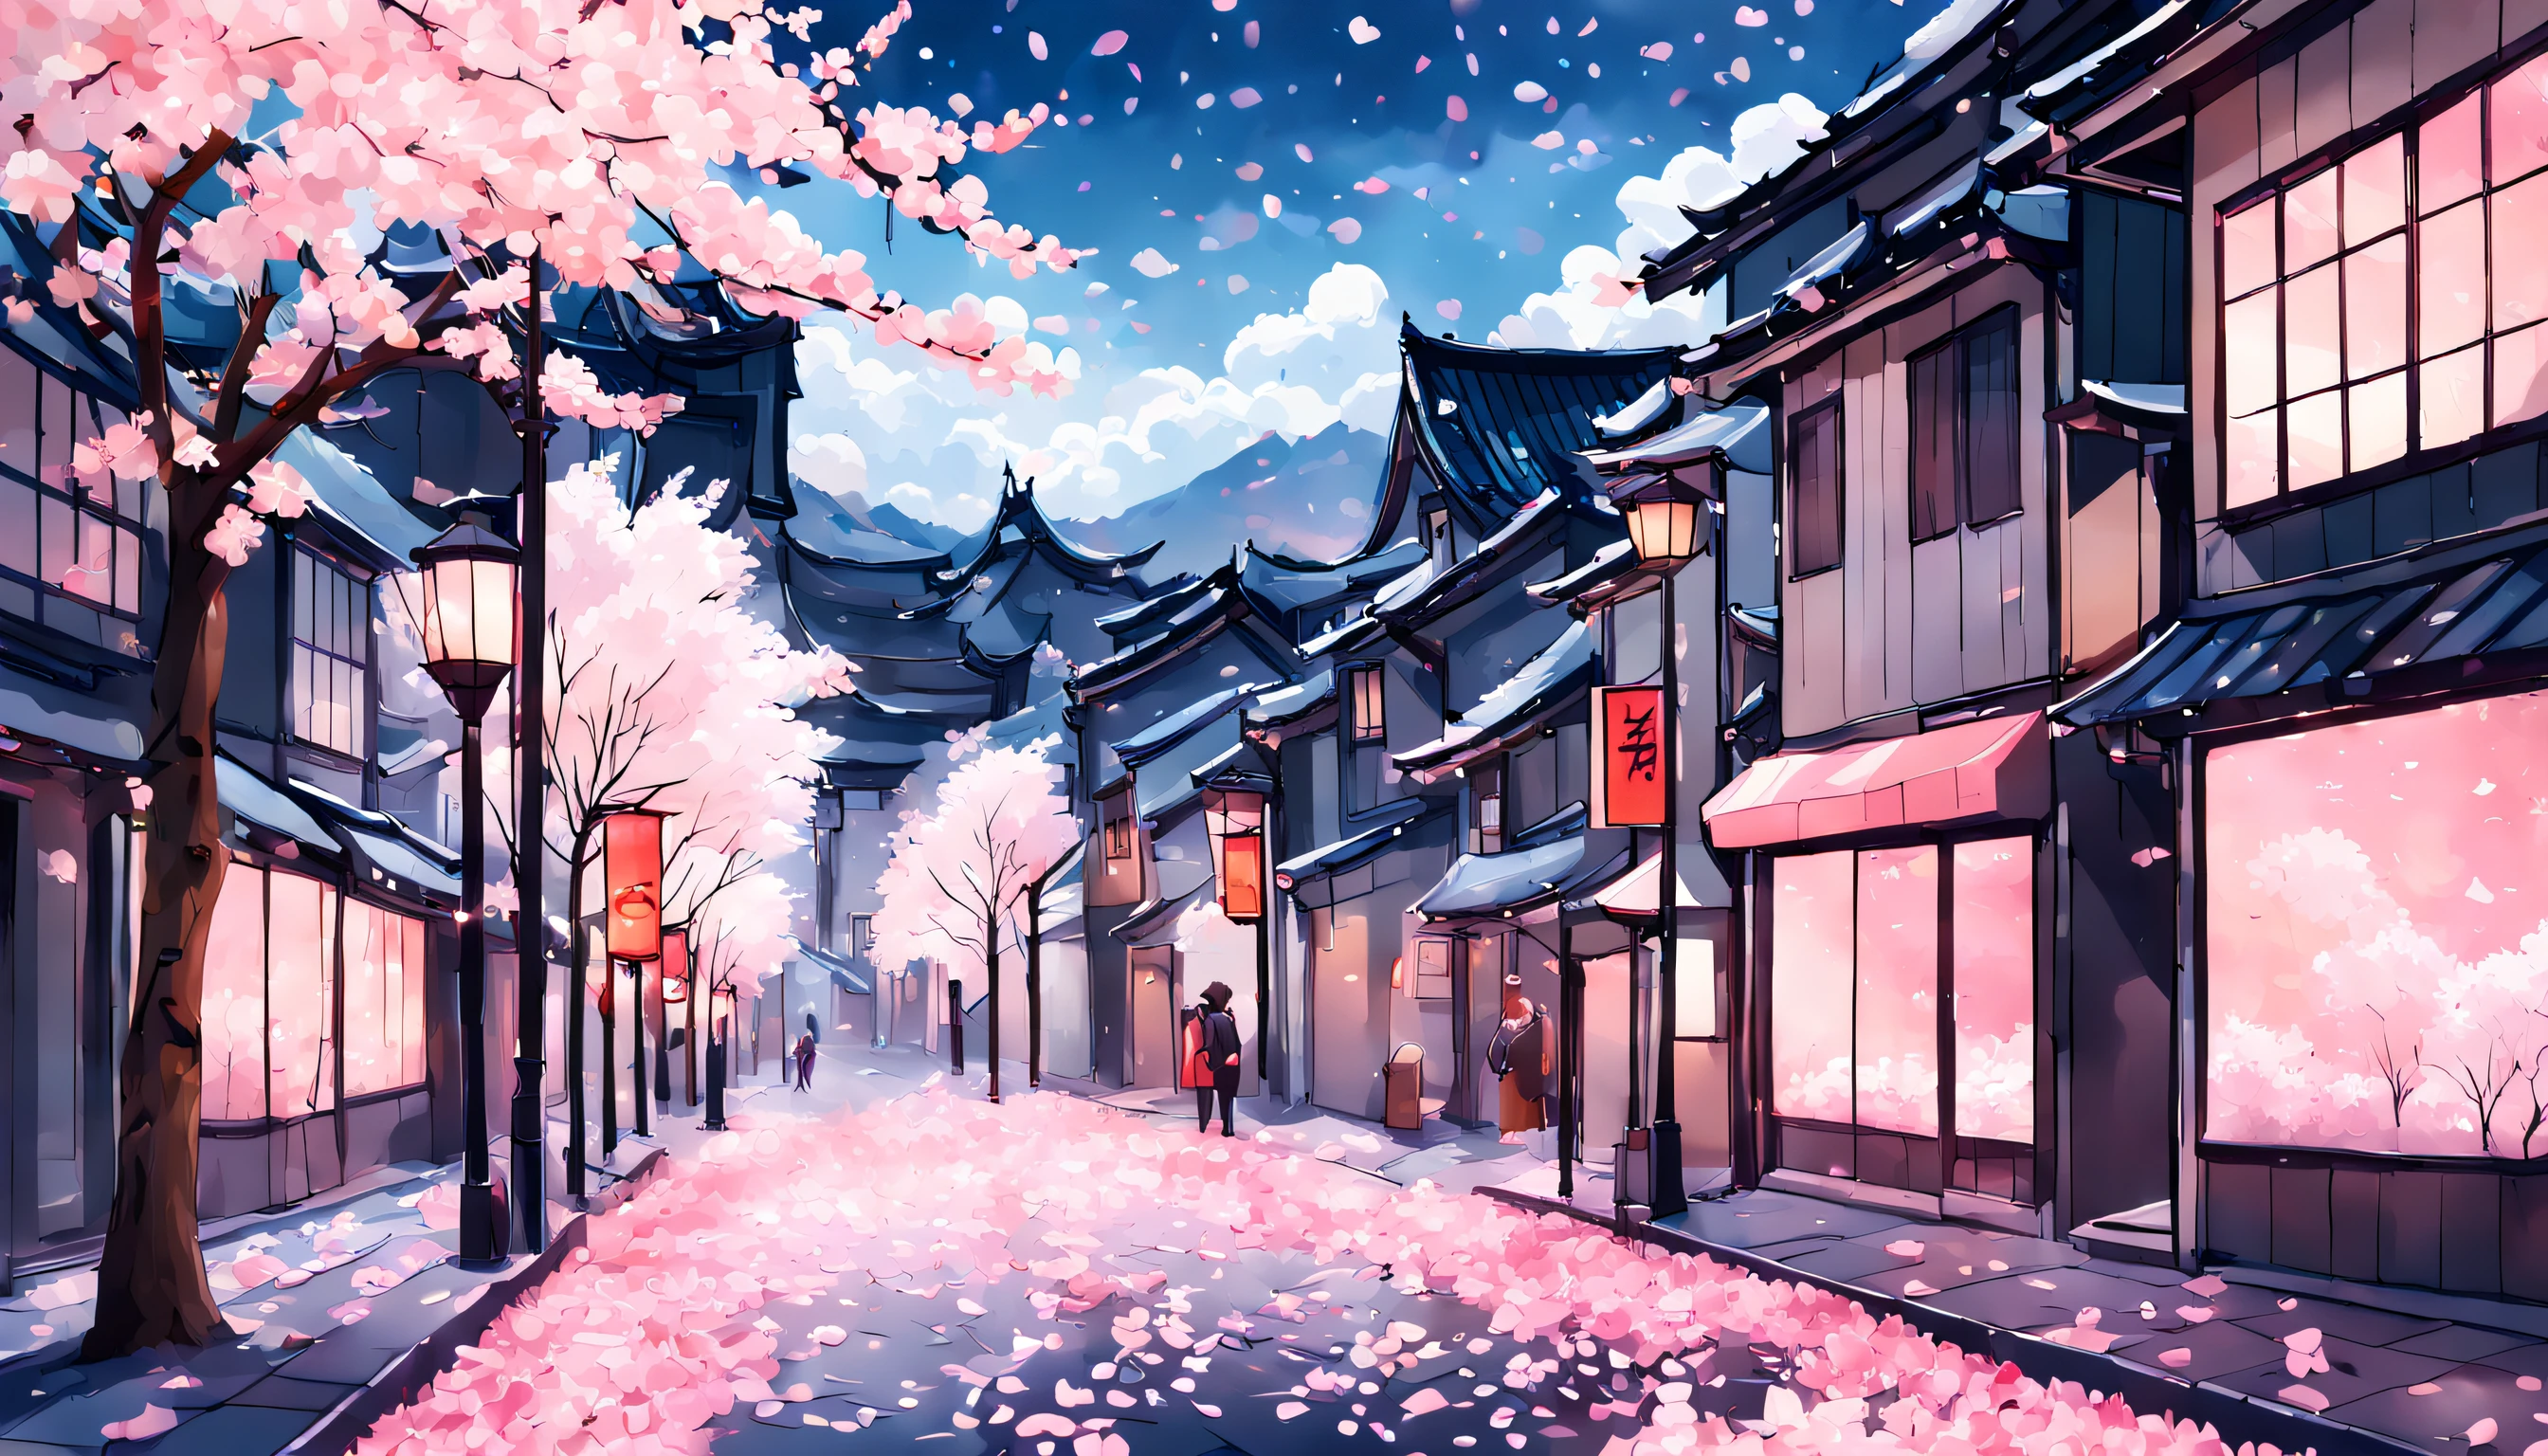 Una representación impresionante de una calle de la ciudad cubierta de pétalos de cerezo., bañado en un suave resplandor rosa y el cielo de un azul vibrante con esponjosas nubes blancas. Las flores de cerezo deberían estar en plena floración., con delicados pétalos rosados y blancos que caen suavemente al suelo como copos de nieve. El efecto general debe ser de serena belleza y pacífica tranquilidad., Capturando la magia fugaz pero inolvidable de la primavera en Japón..